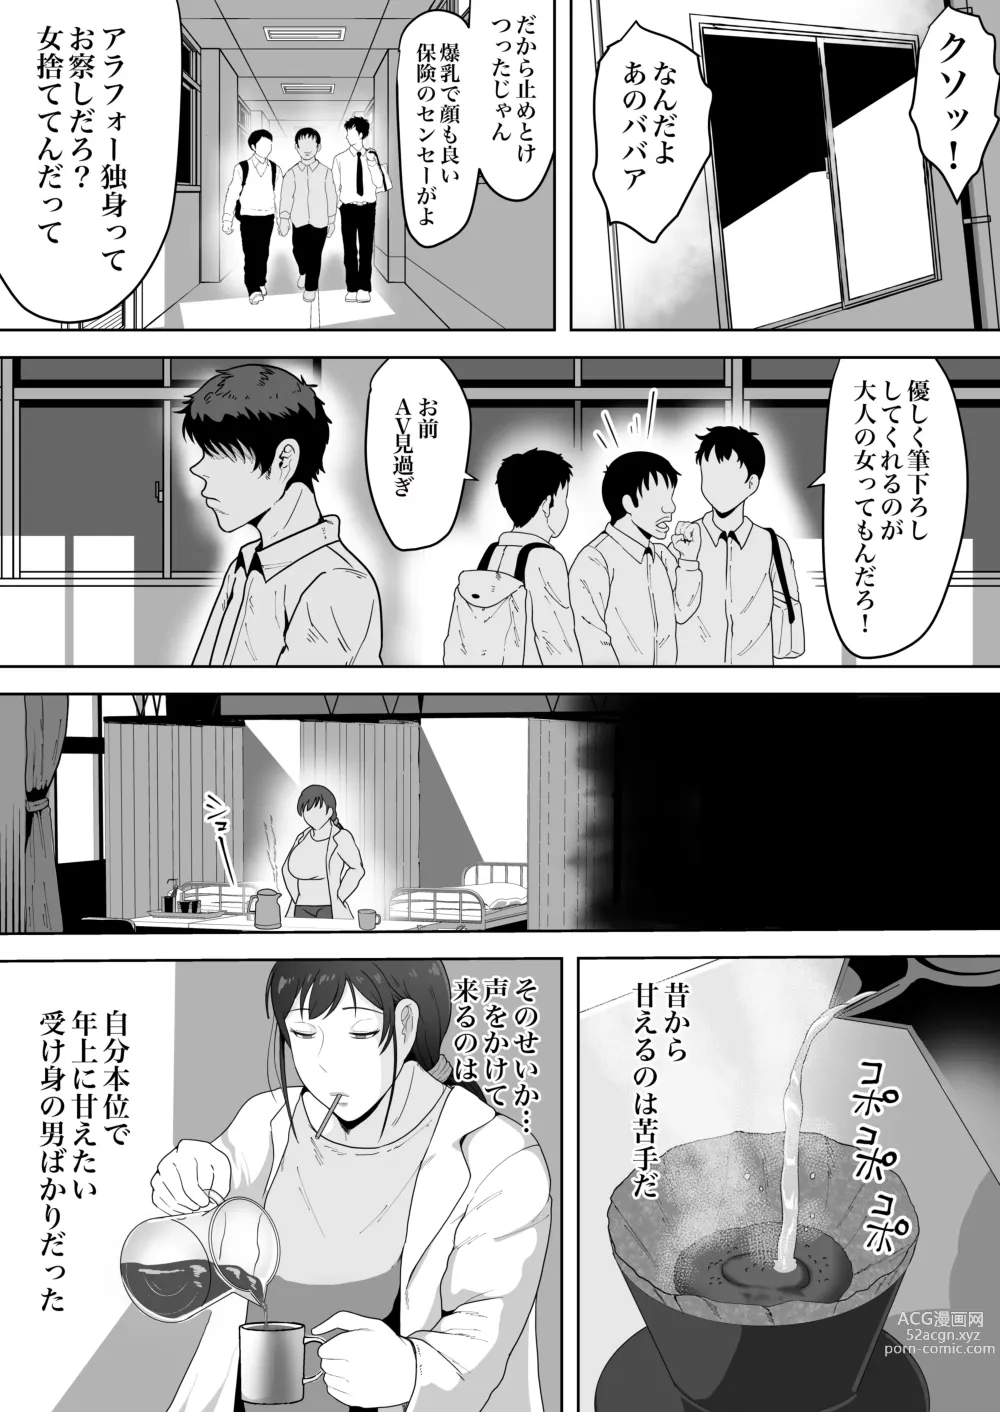 Page 3 of doujinshi Hoken no Sensei Shinobu 37-sai